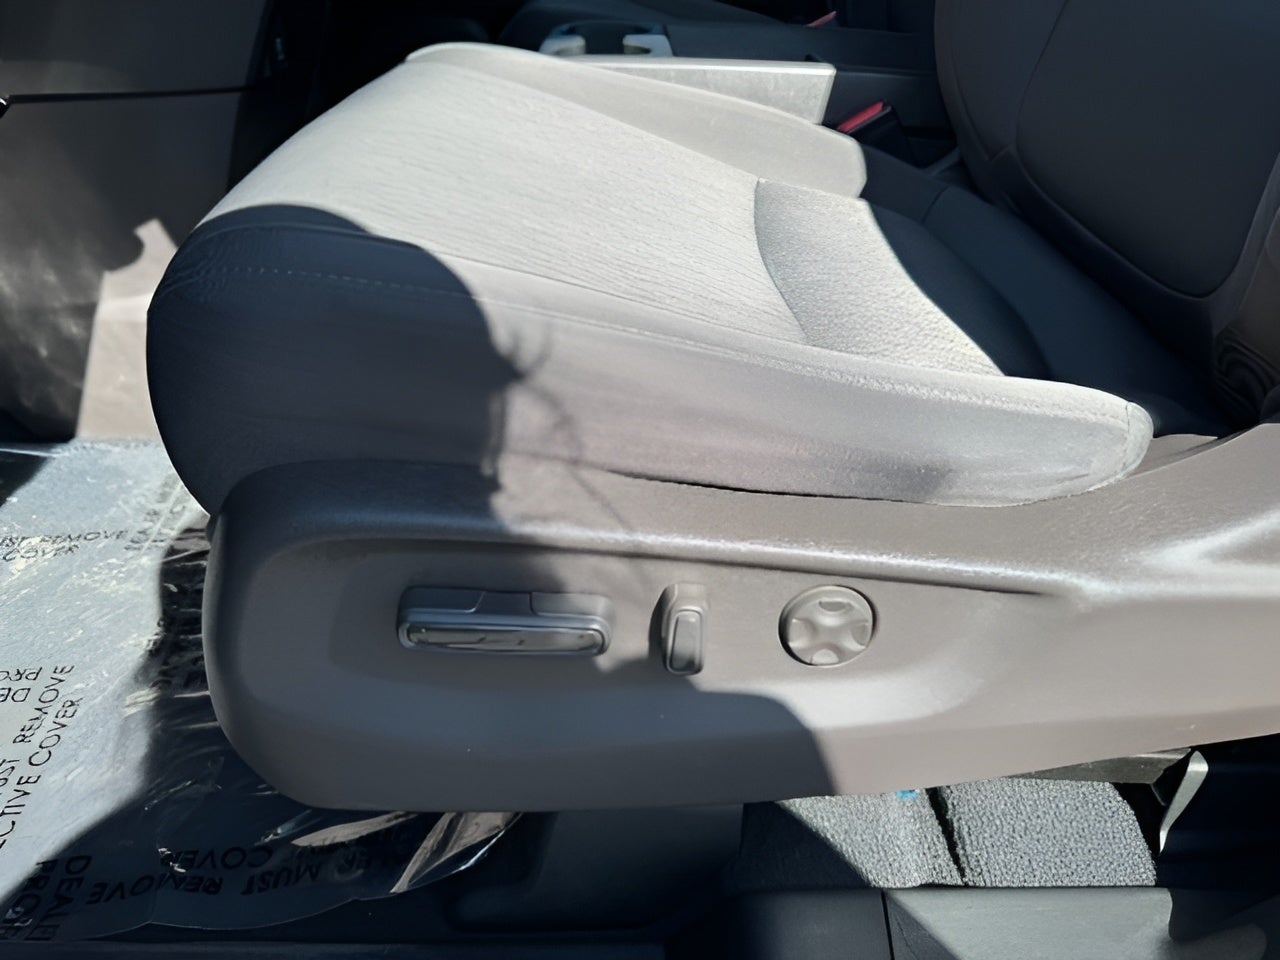 2019 Honda Odyssey EX Auto